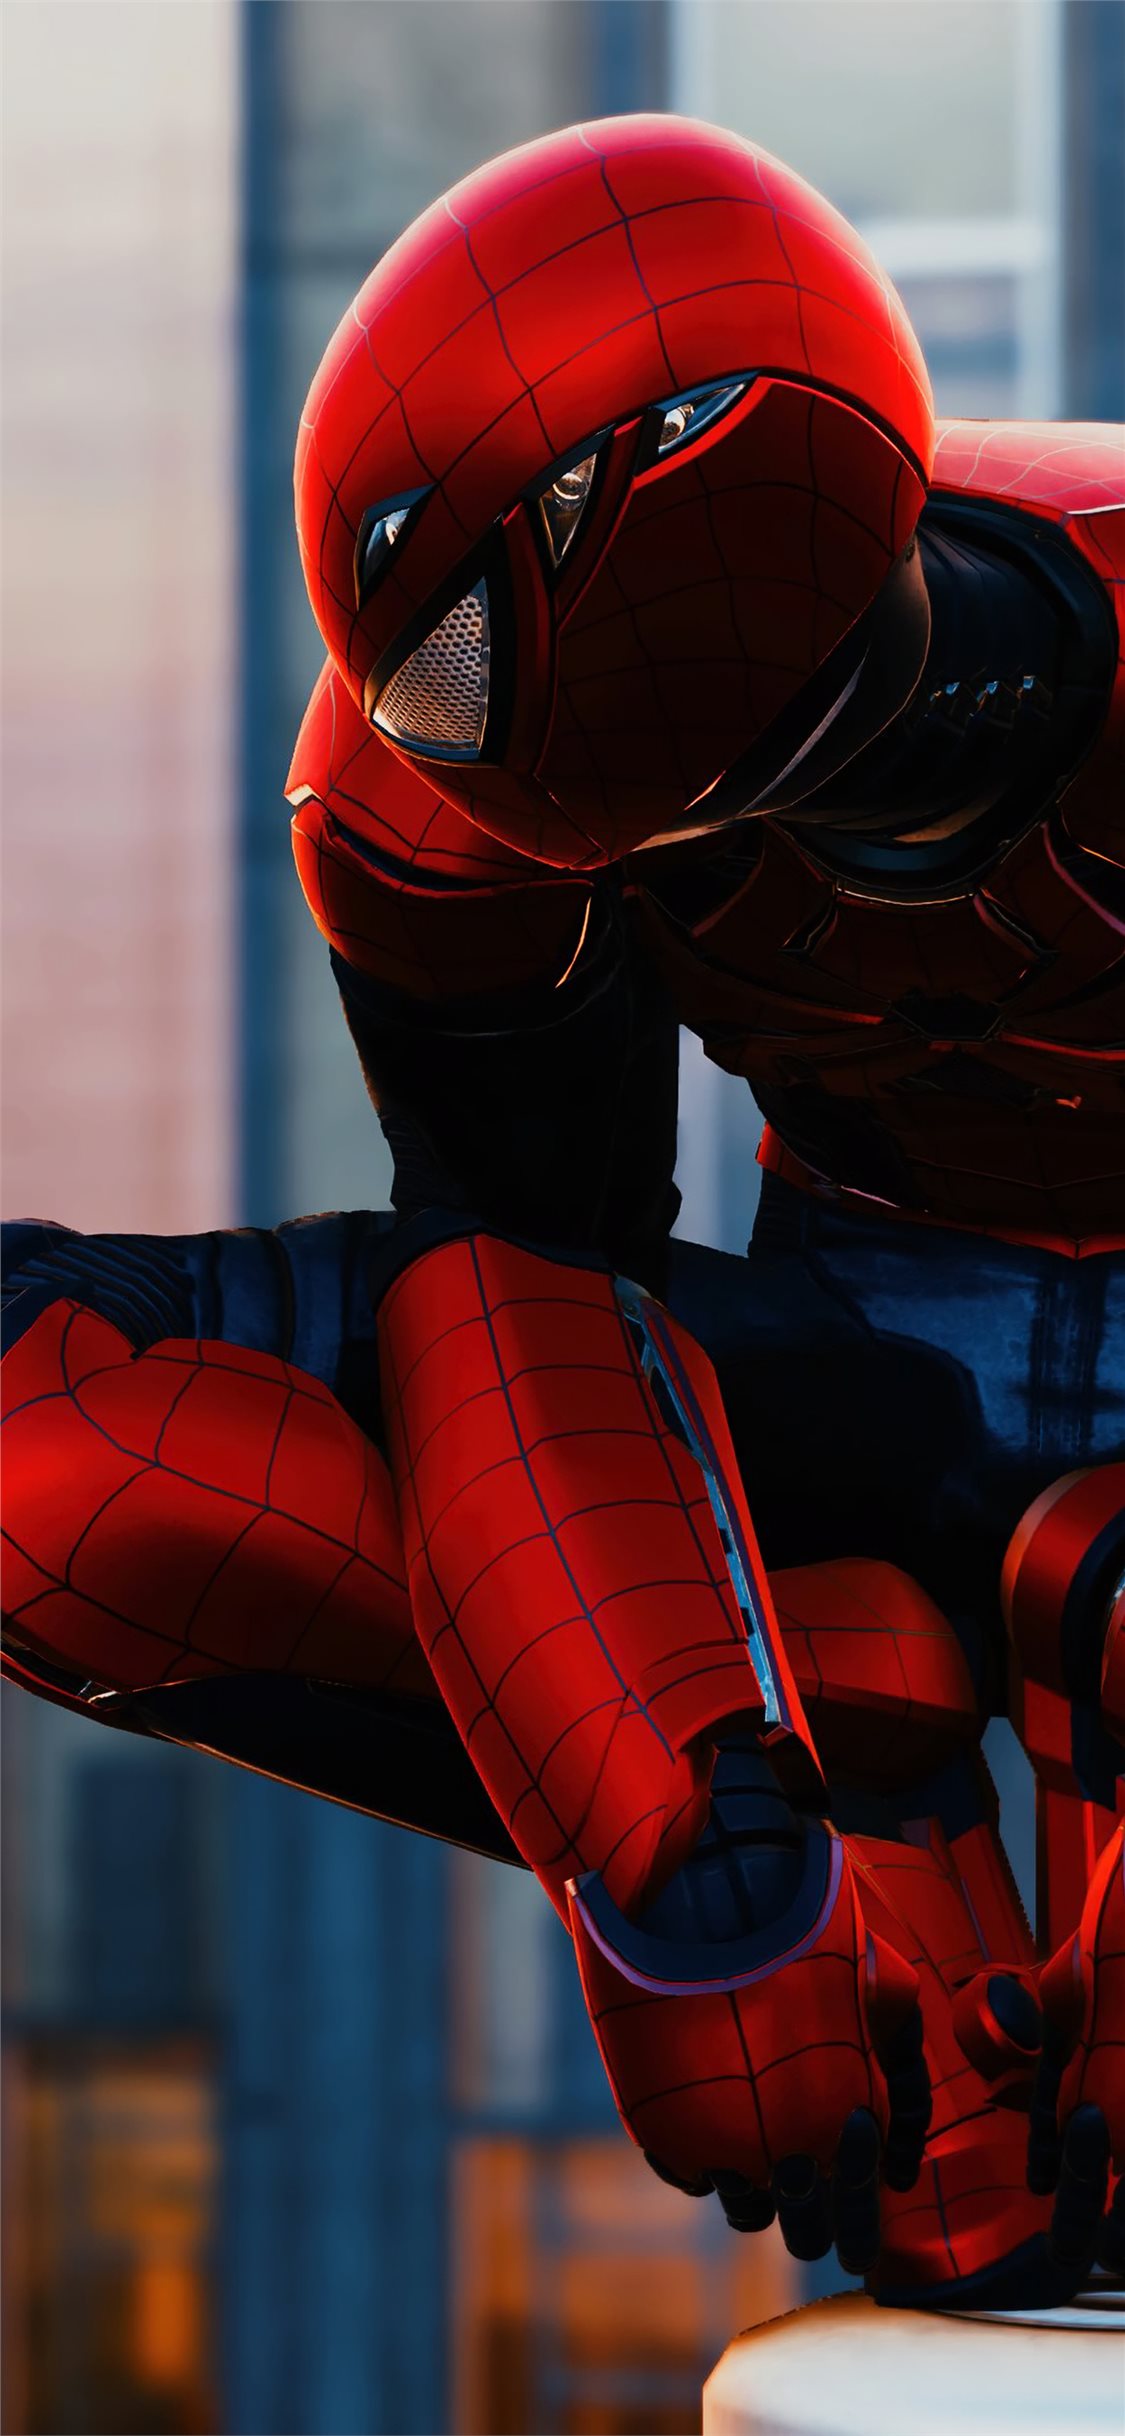 fond d'écran ps4,rouge,homme araignée,personnage fictif,super héros,équipement de protection individuelle